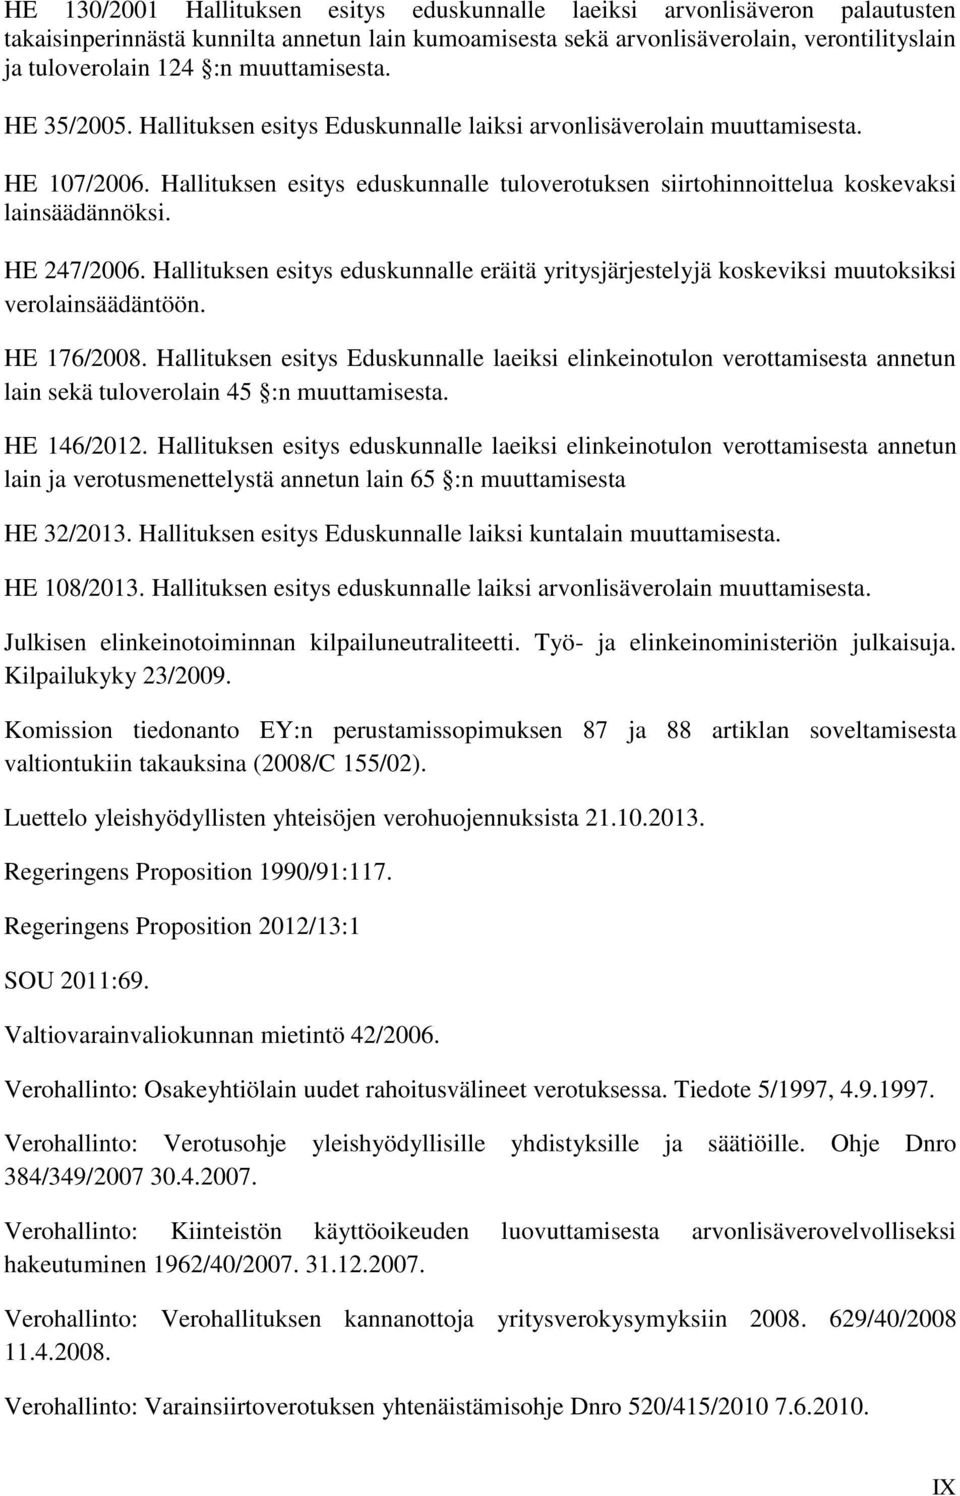 Hallituksen esitys eduskunnalle tuloverotuksen siirtohinnoittelua koskevaksi lainsäädännöksi. HE 247/2006.